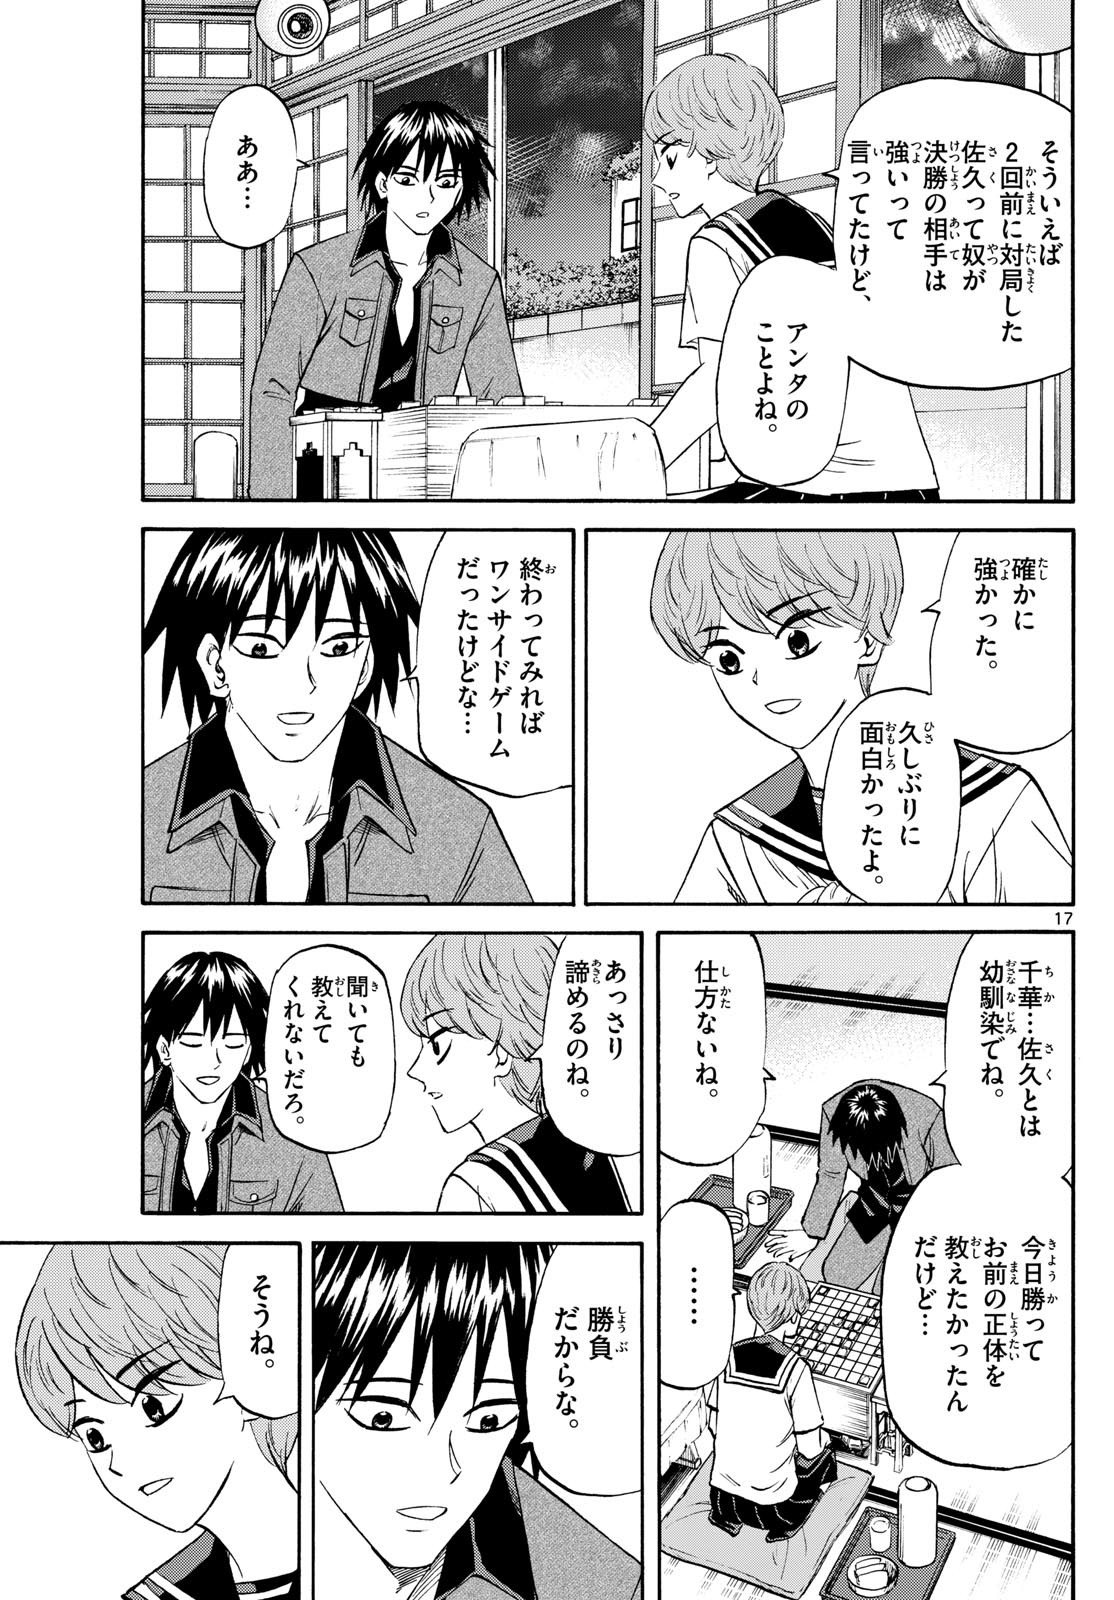 Ryu-to-Ichigo - Chapter 194 - Page 17